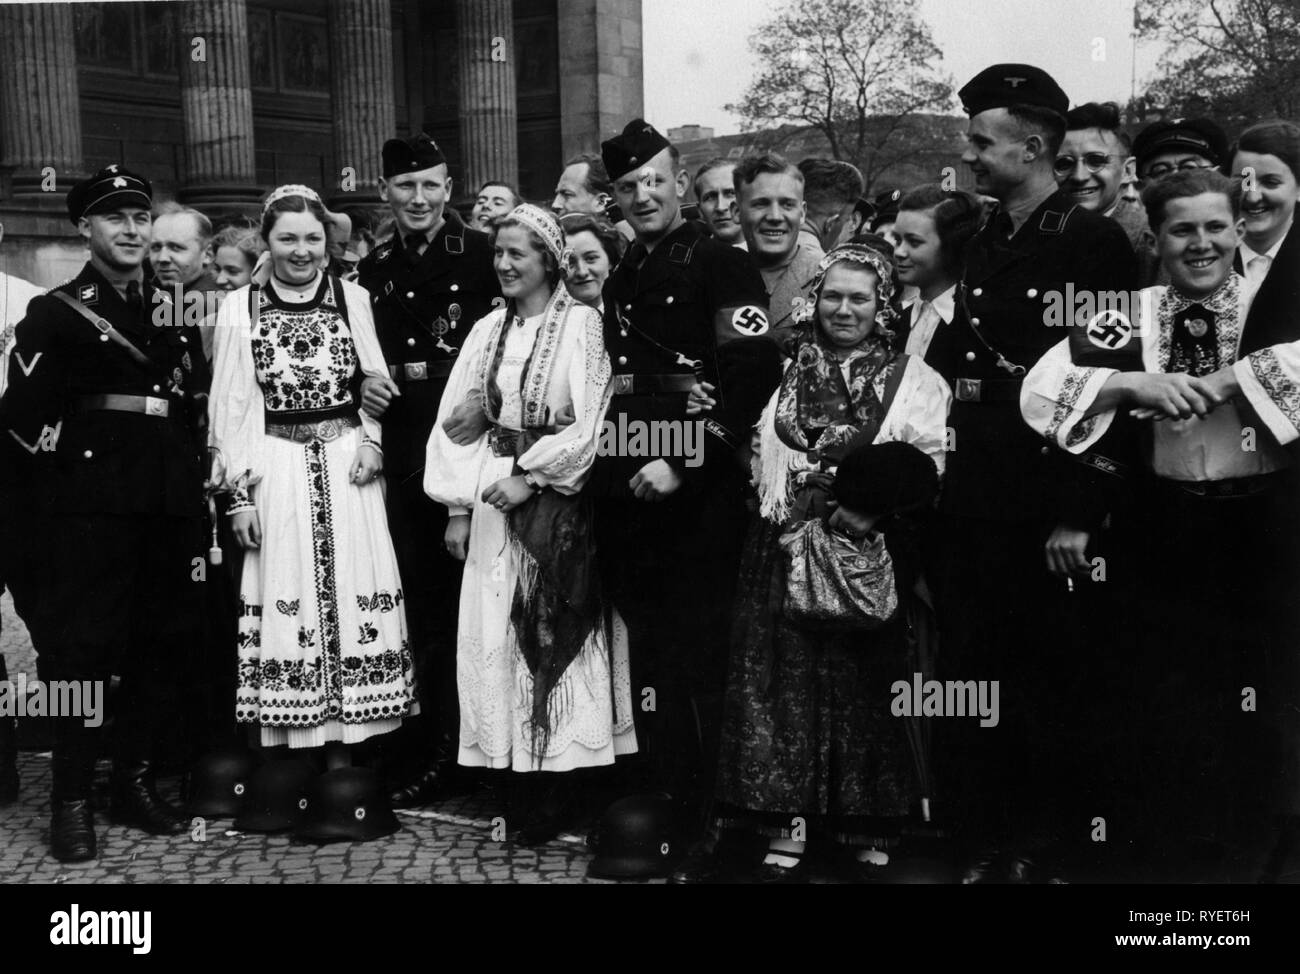 El nacional-socialismo, organizaciones, SS (Schutzstaffel ), hombres de las SS de la Leibstandarte Adolf Hitler con mujeres en trajes tradicionales, rally en el jardín de placer, Berlín, Alemania, 1.5.1938, Additional-Rights-Clearance-Info-Not-Available Foto de stock